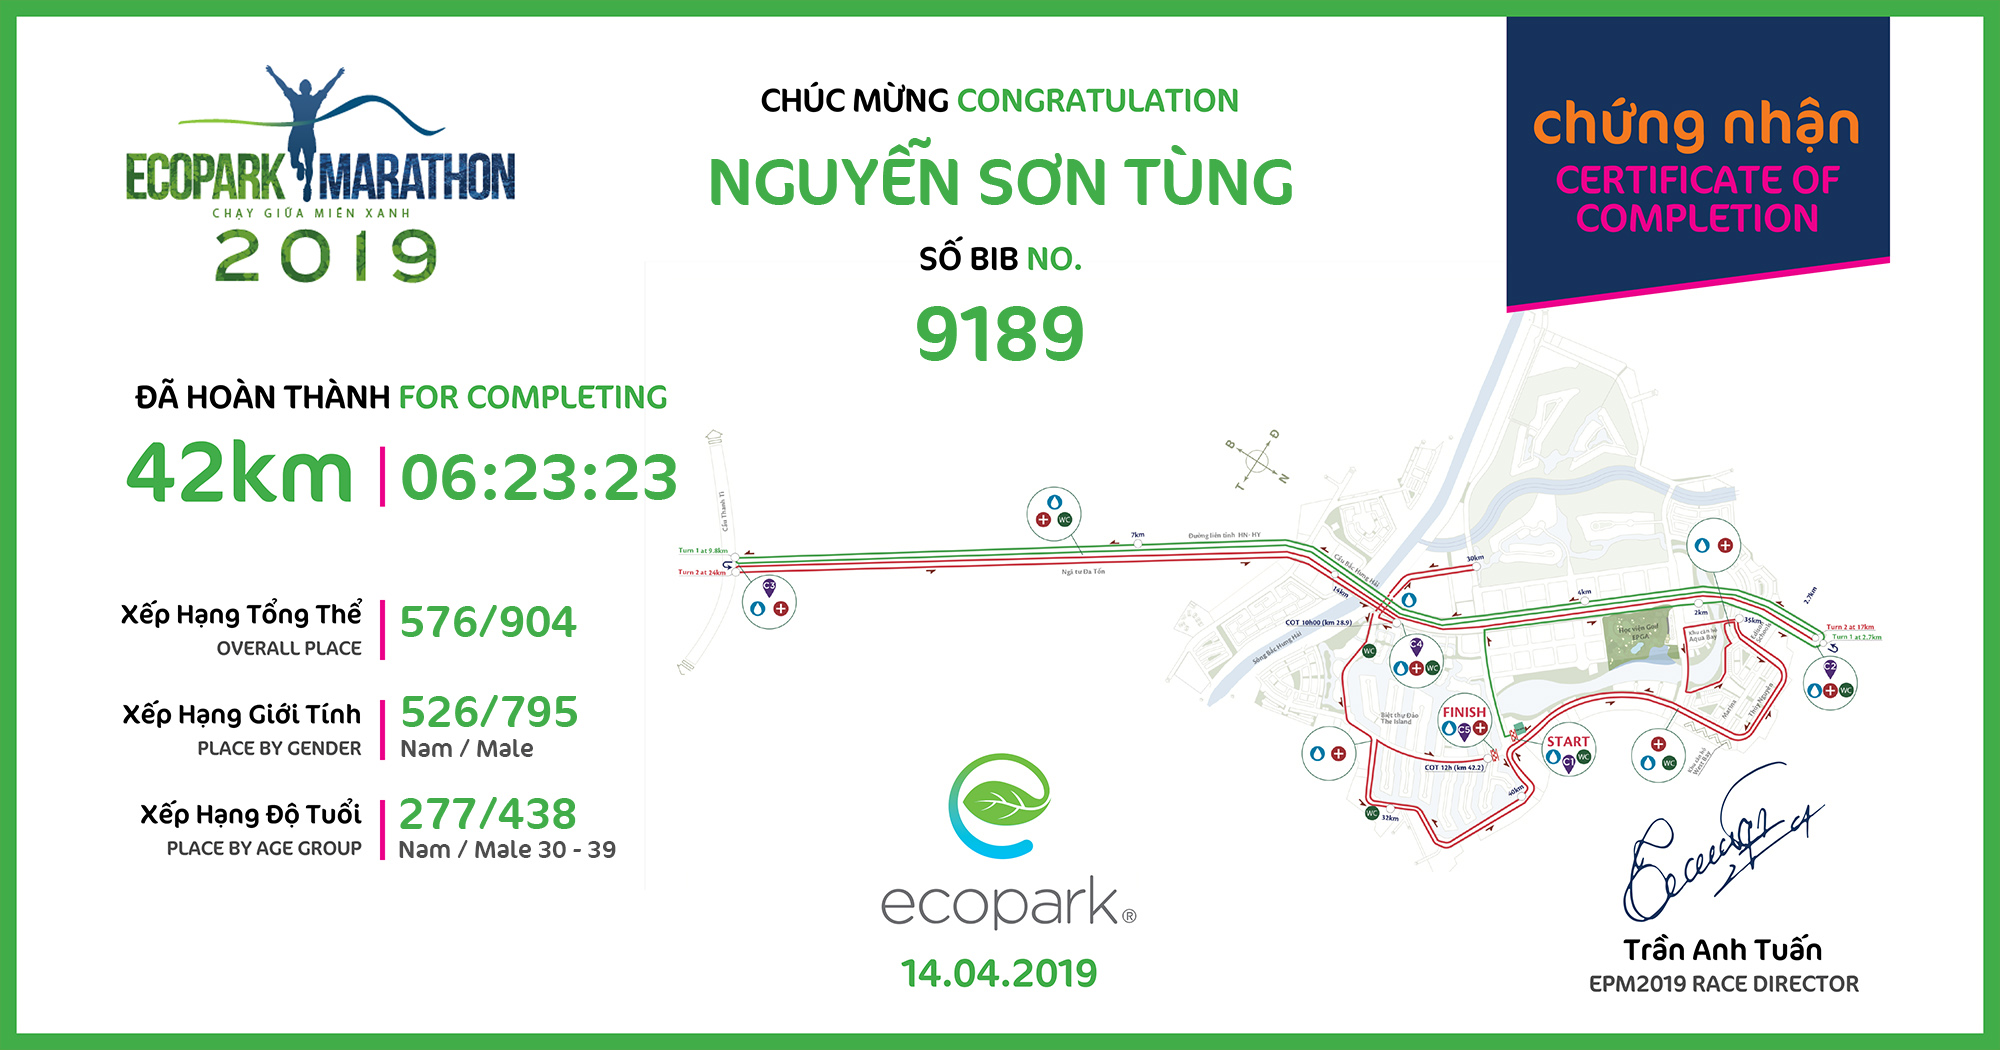 9189 - Nguyễn Sơn Tùng